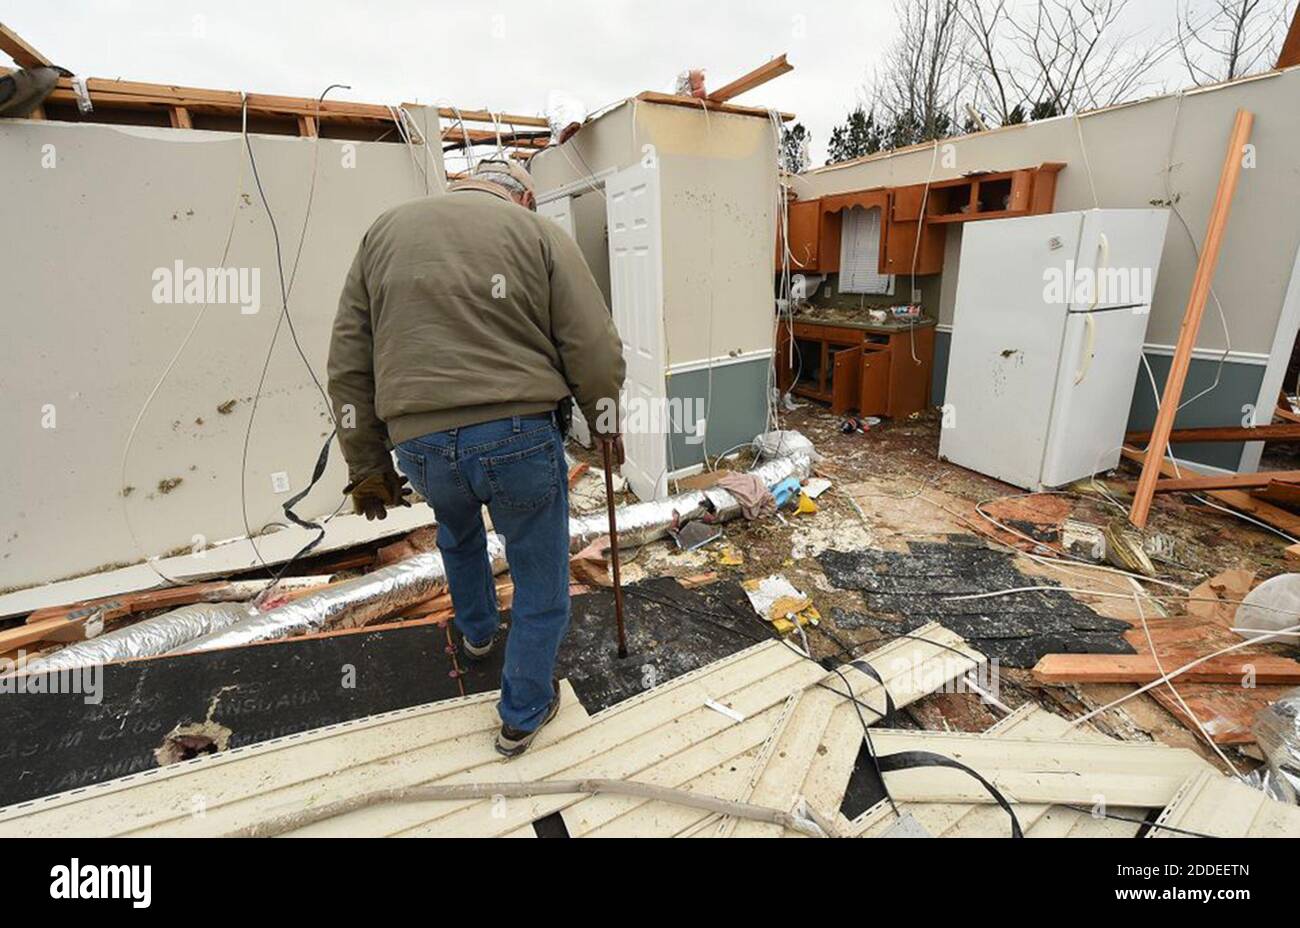 NESSUN FILM, NESSUN VIDEO, NESSUNA TV, NESSUN DOCUMENTARIO - Greg Molinari sopravvisse a casa sua quando il tornado colpì. Ha messo una pentola di cottura sopra la sua testa e ha hunkered giù nel corridoio interno della casa. Gli amici lo aiutarono a rimuovere alcuni dei suoi effetti personali. Questo quartiere appena fuori Lee CR 430 ha ricevuto gravi danni da tornado. Tornado Damage a Smith's Station, Alabama. Il 4 marzo 2019. Almeno 23 persone sono confermate morte dopo l'epidemia di tornado della domenica con violente tempeste che hanno lasciato i detriti sparsi nell'Alabama meridionale e in Georgia. Foto di Joe Songer/Alabama Media Group/TNS/ABACAPRESS.COM Foto Stock